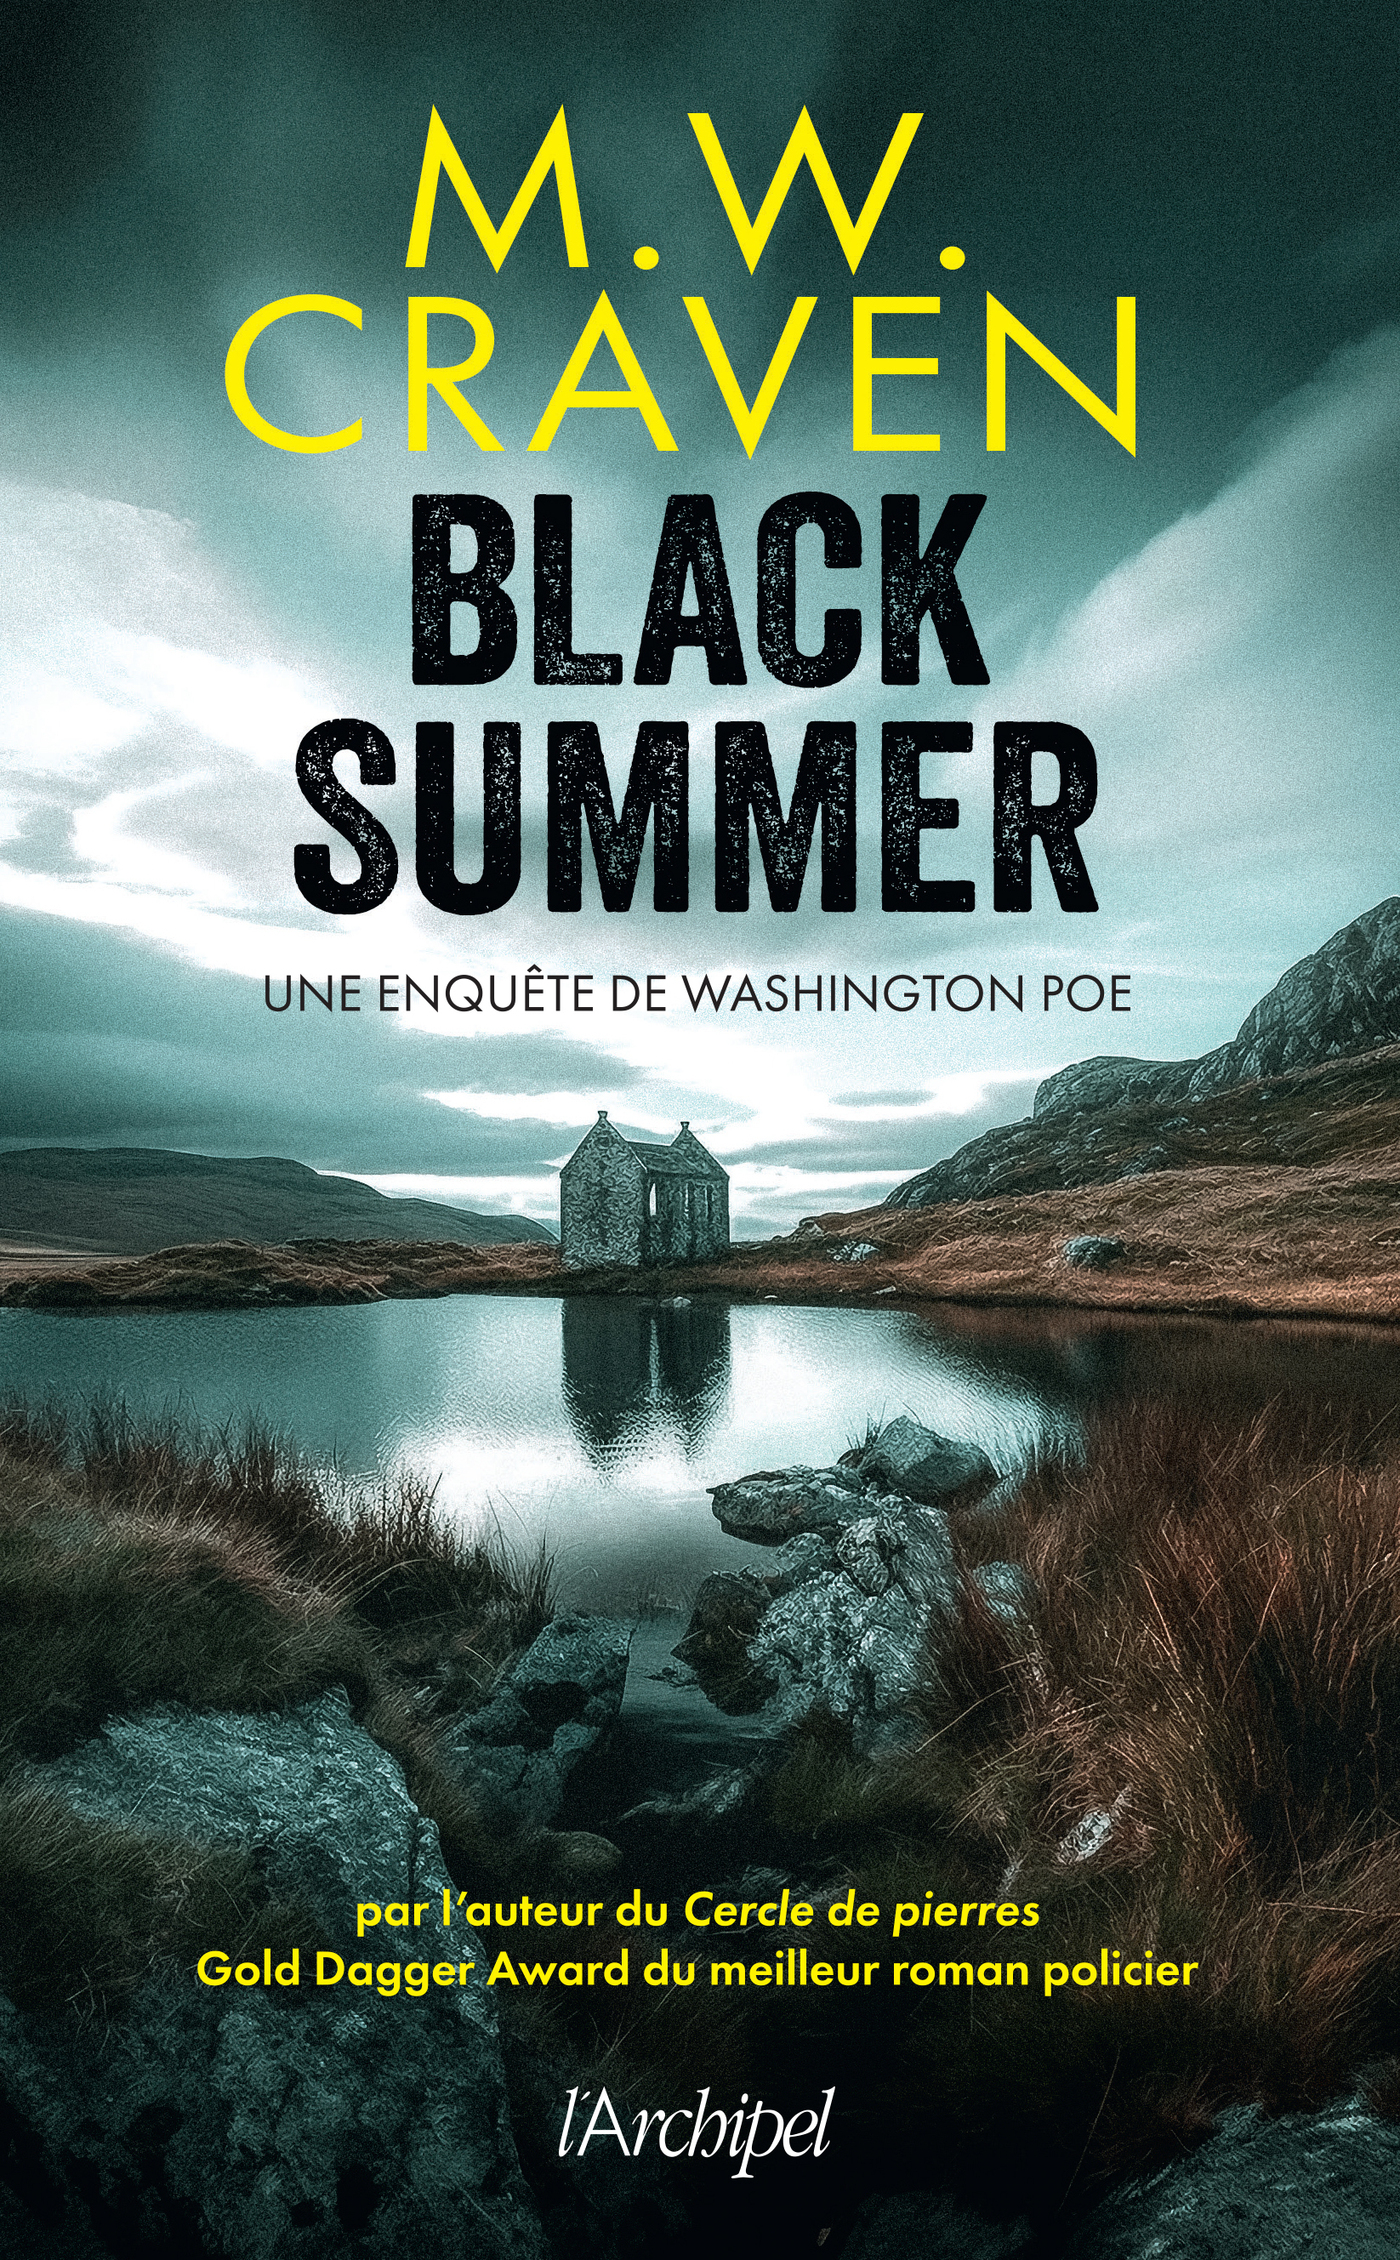 Afficher "Black Summer"